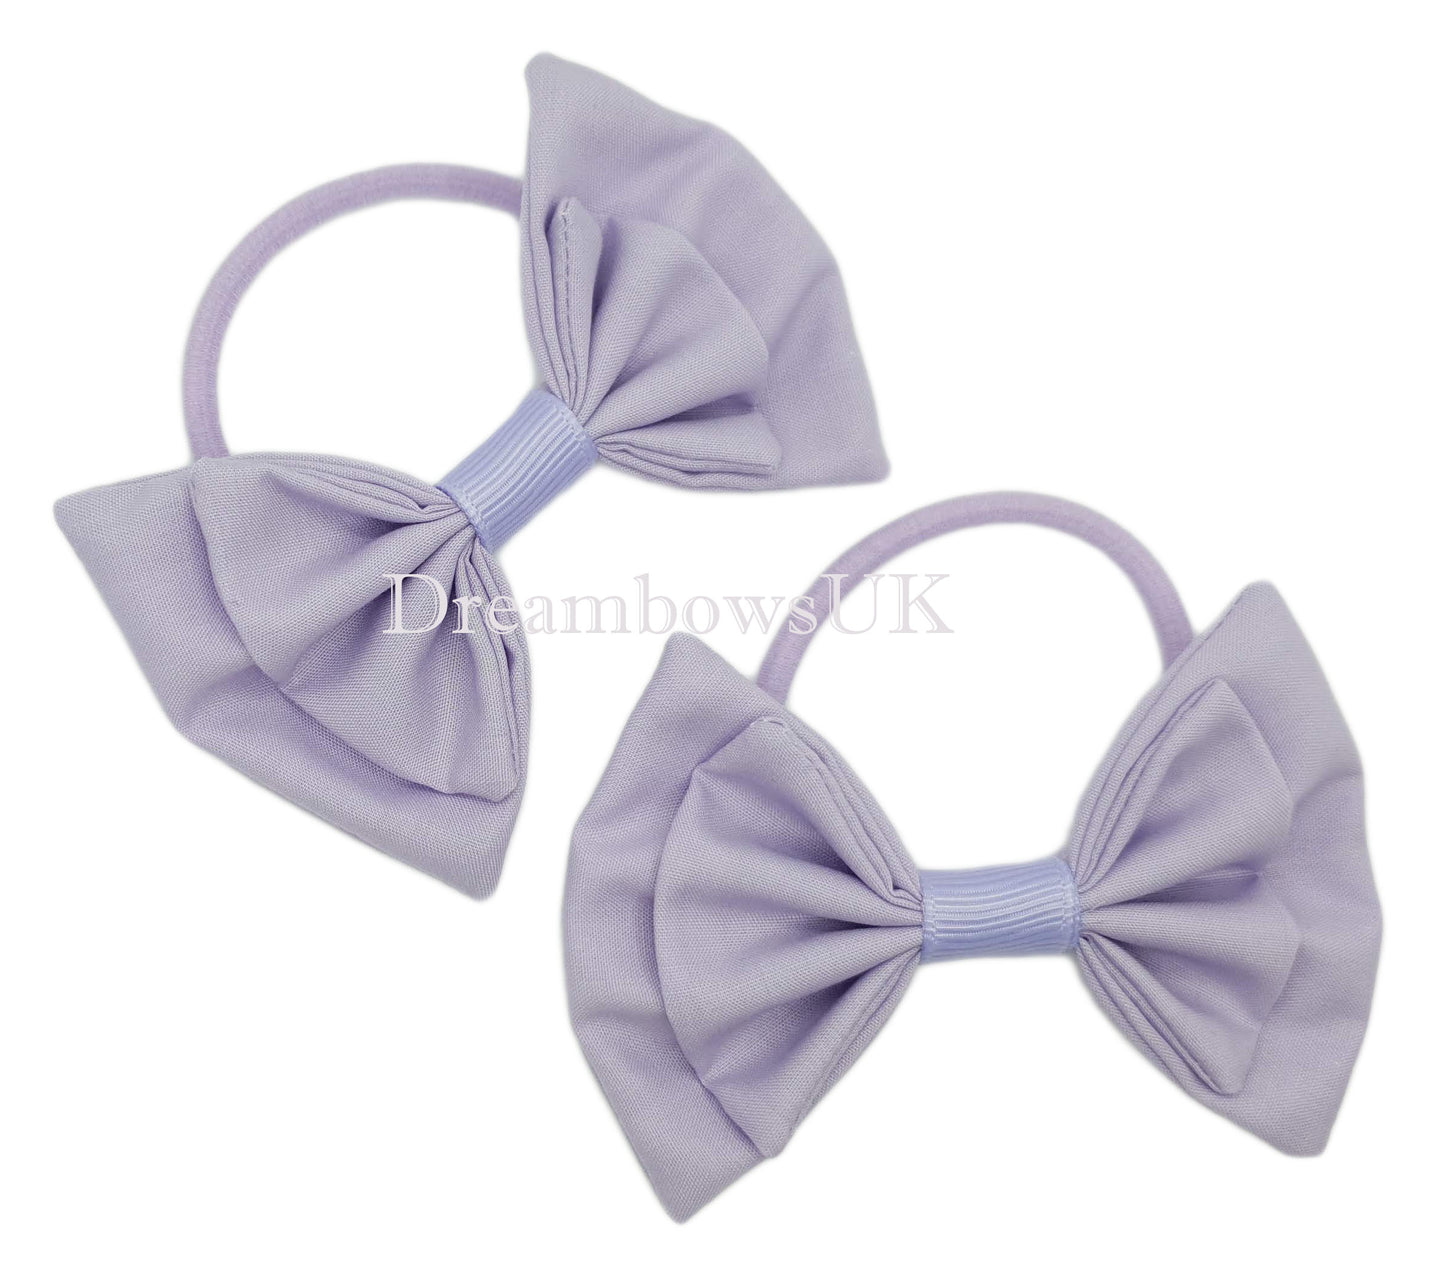 Girls lilac fabric hair bows on thick hair elastics